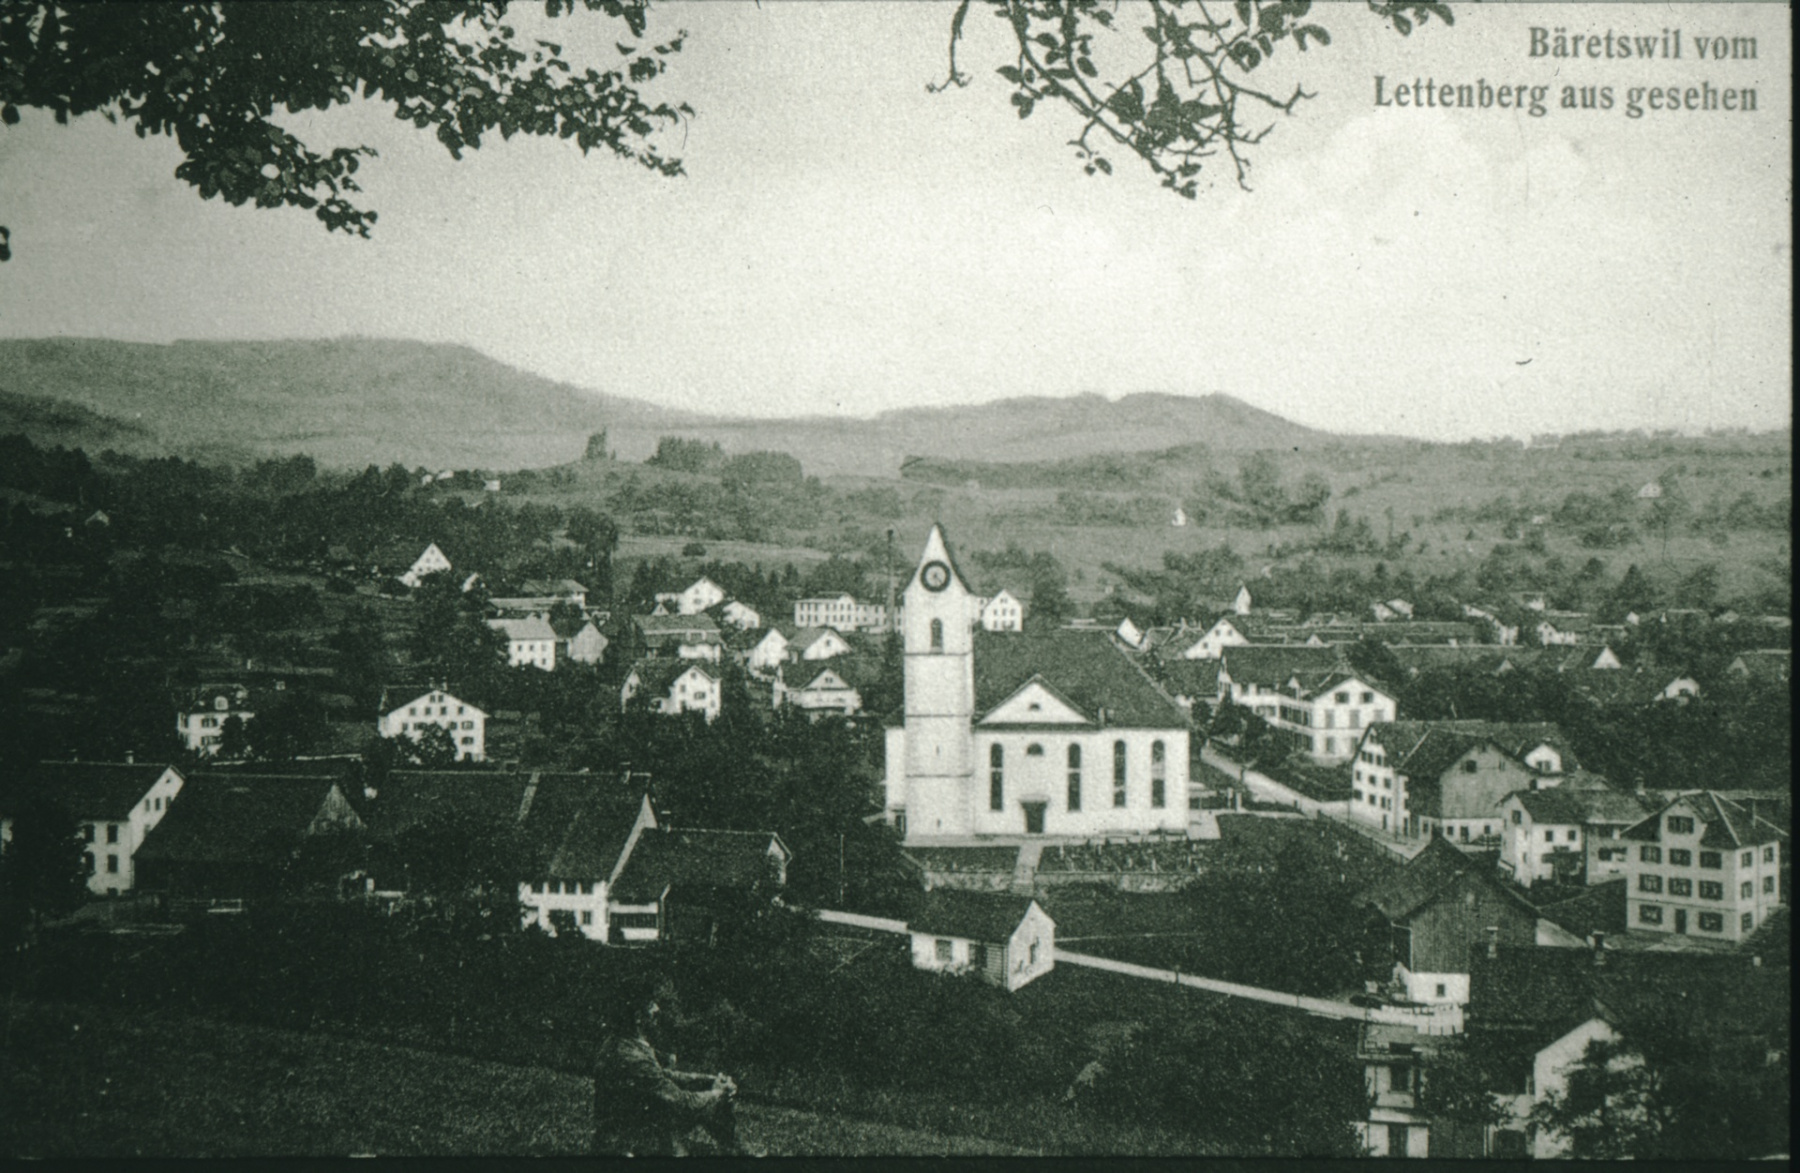 Postkarte. Bäretswil vom Lettenberg aus gesehen